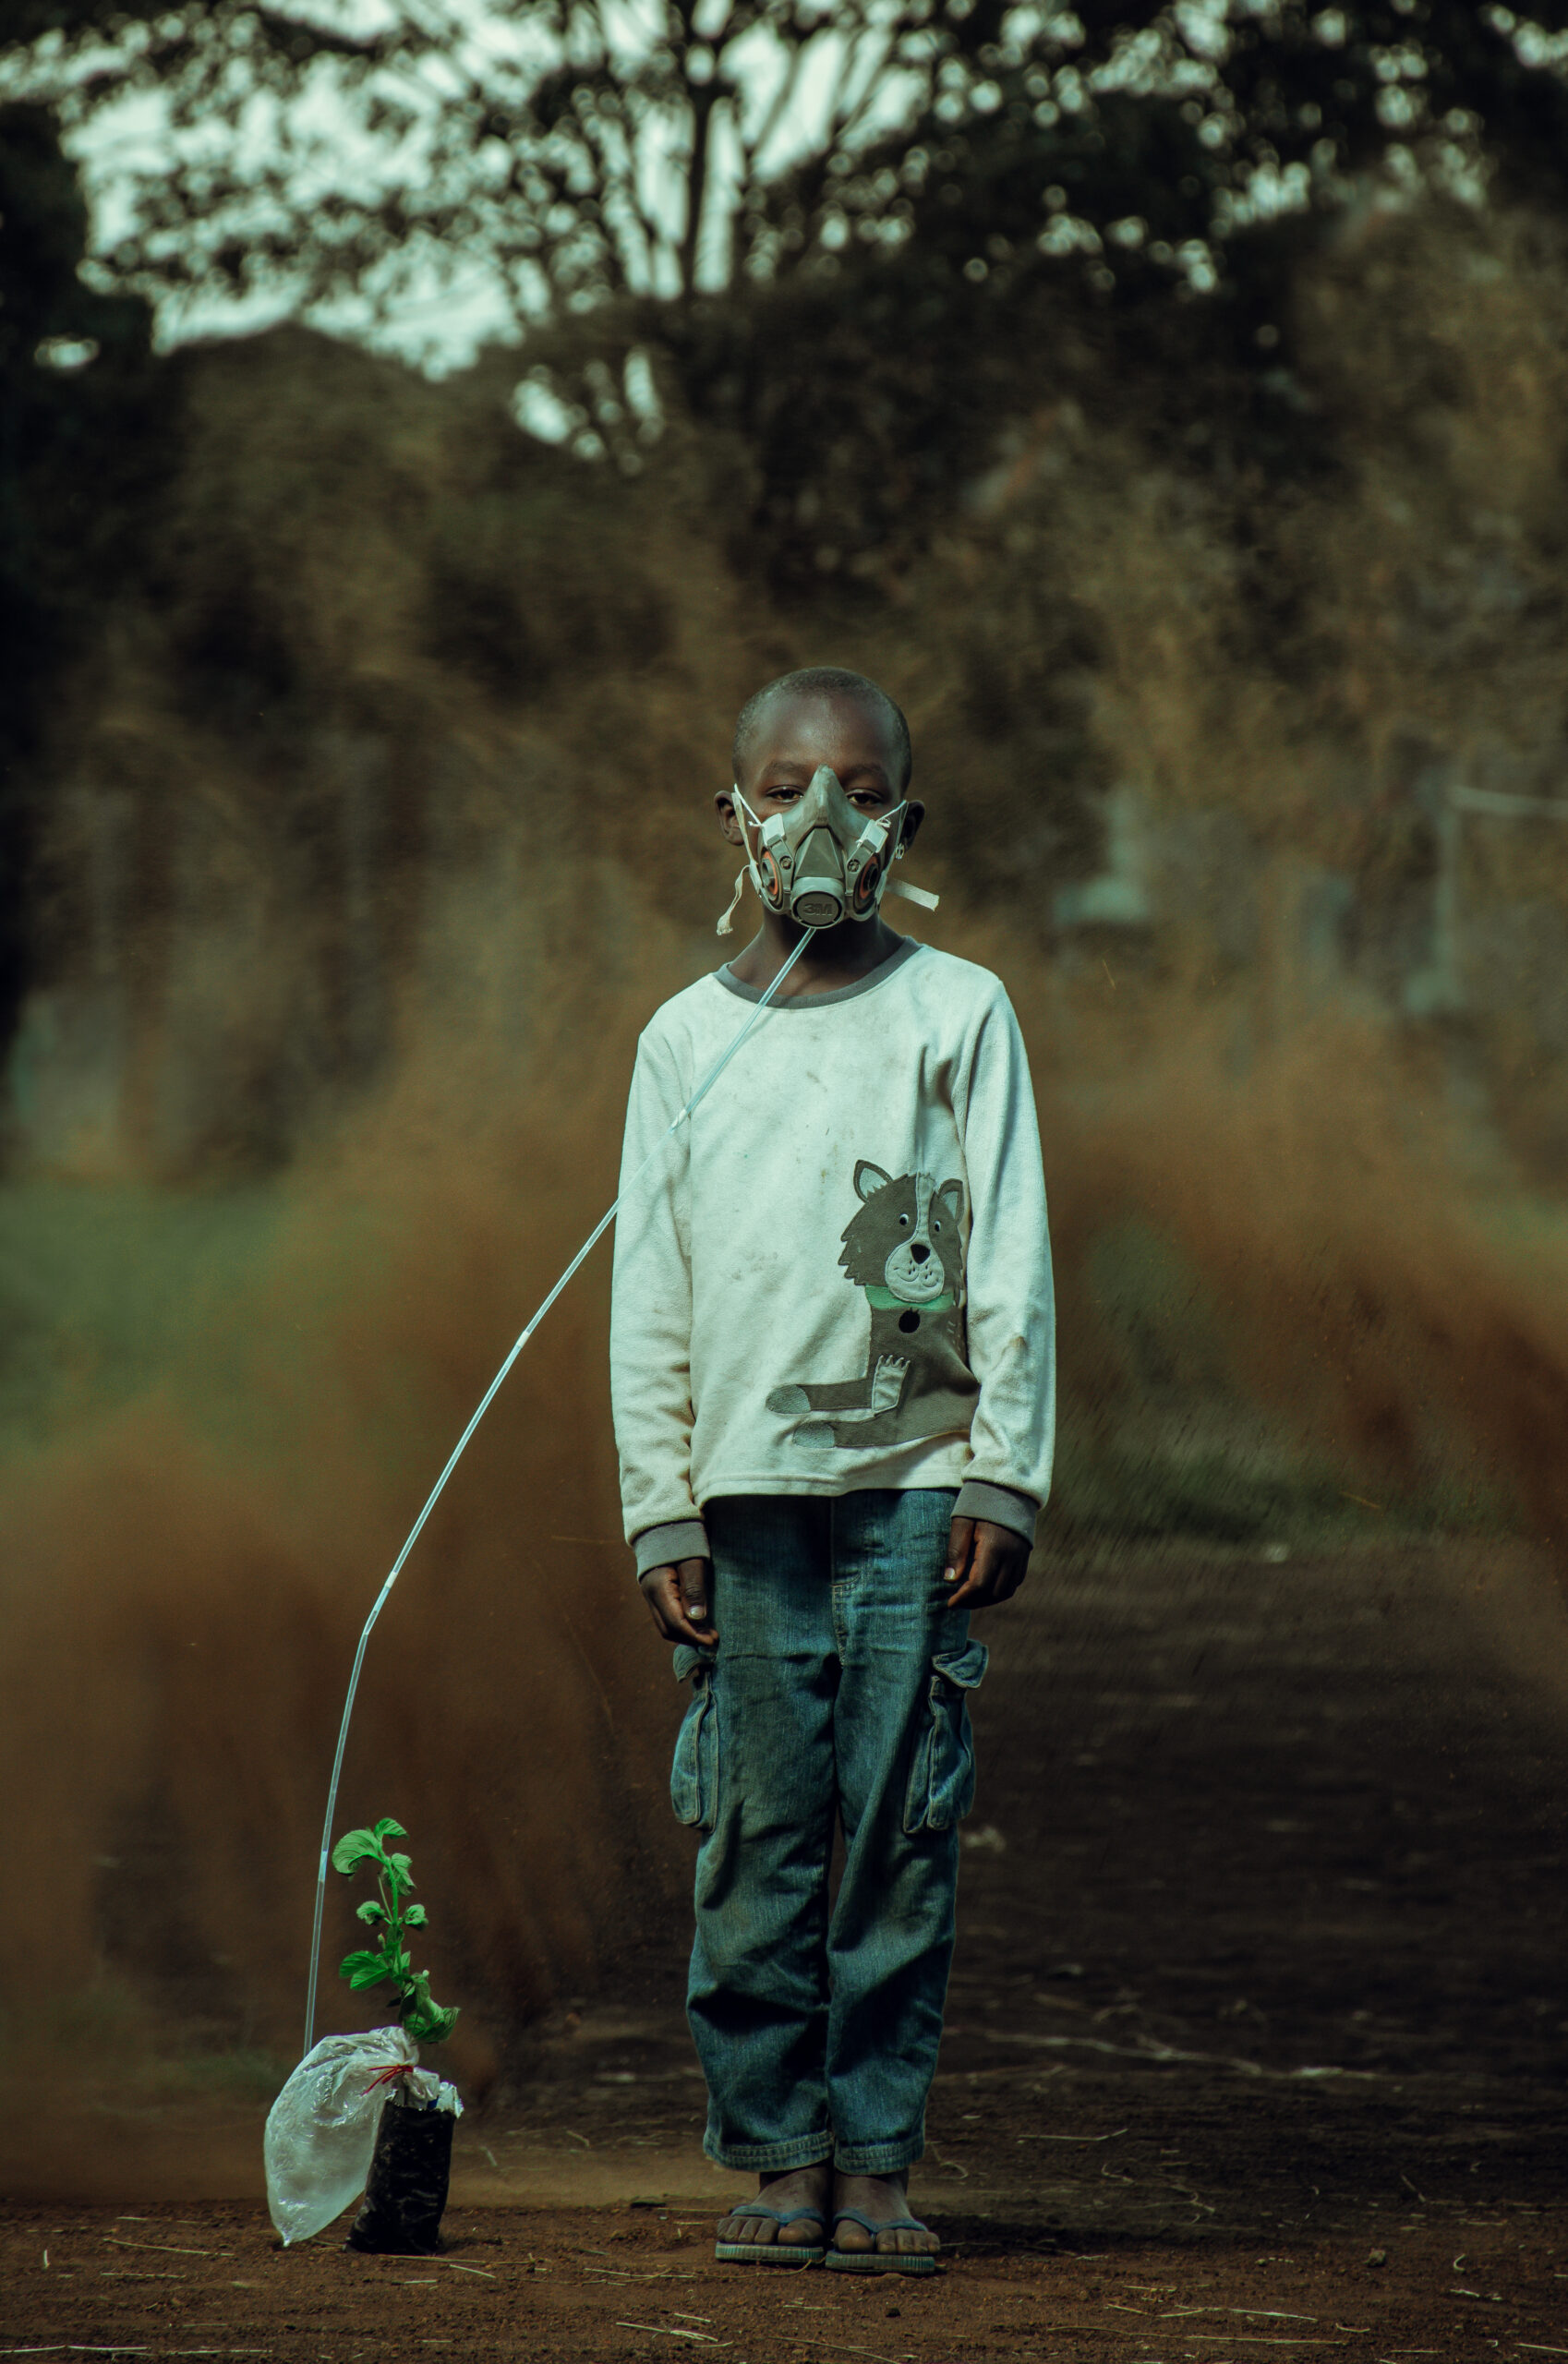 Niño del pueblo Luo de Kenia con una máscara de oxígeno conectada a una planta para representar la importancia de los bosques frente a la crisis climática. 
Ganadores del Concurso de Fotografía “Soluciones Innovadoras de Pueblos Indígenas”
Nombre de la foto: The last breath. Autor: Kevin Ochieng
